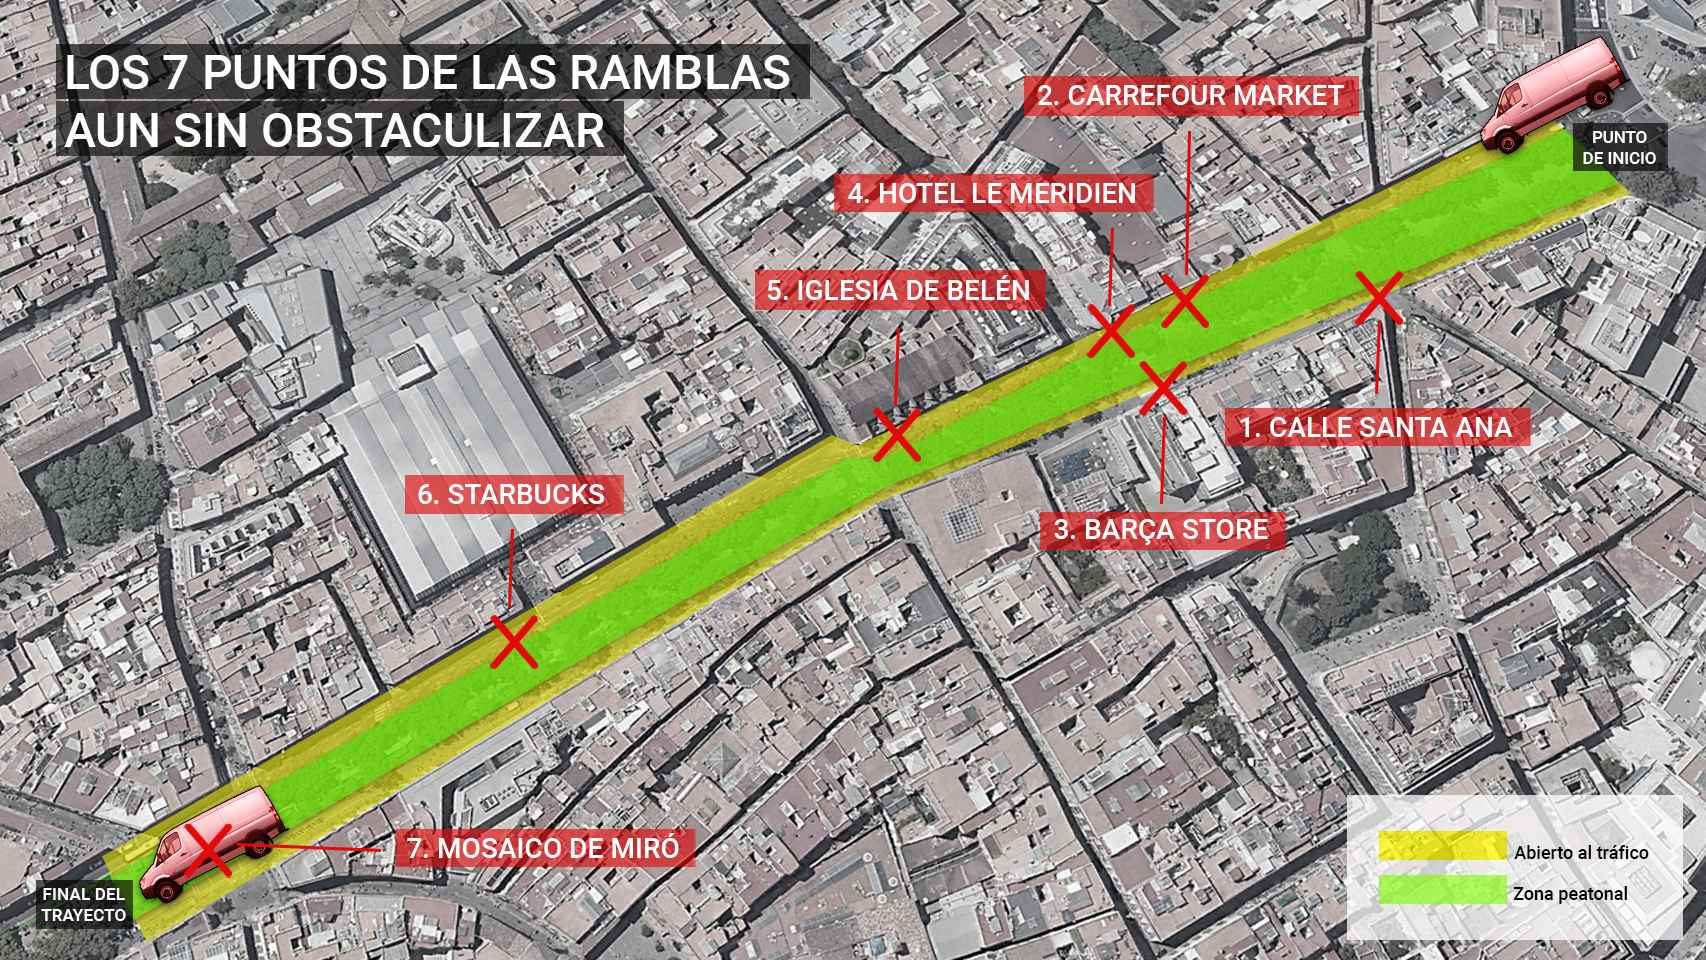 Mapa del tramo de La Rambla donde se produjo el atentado y sus vulnerabilidades